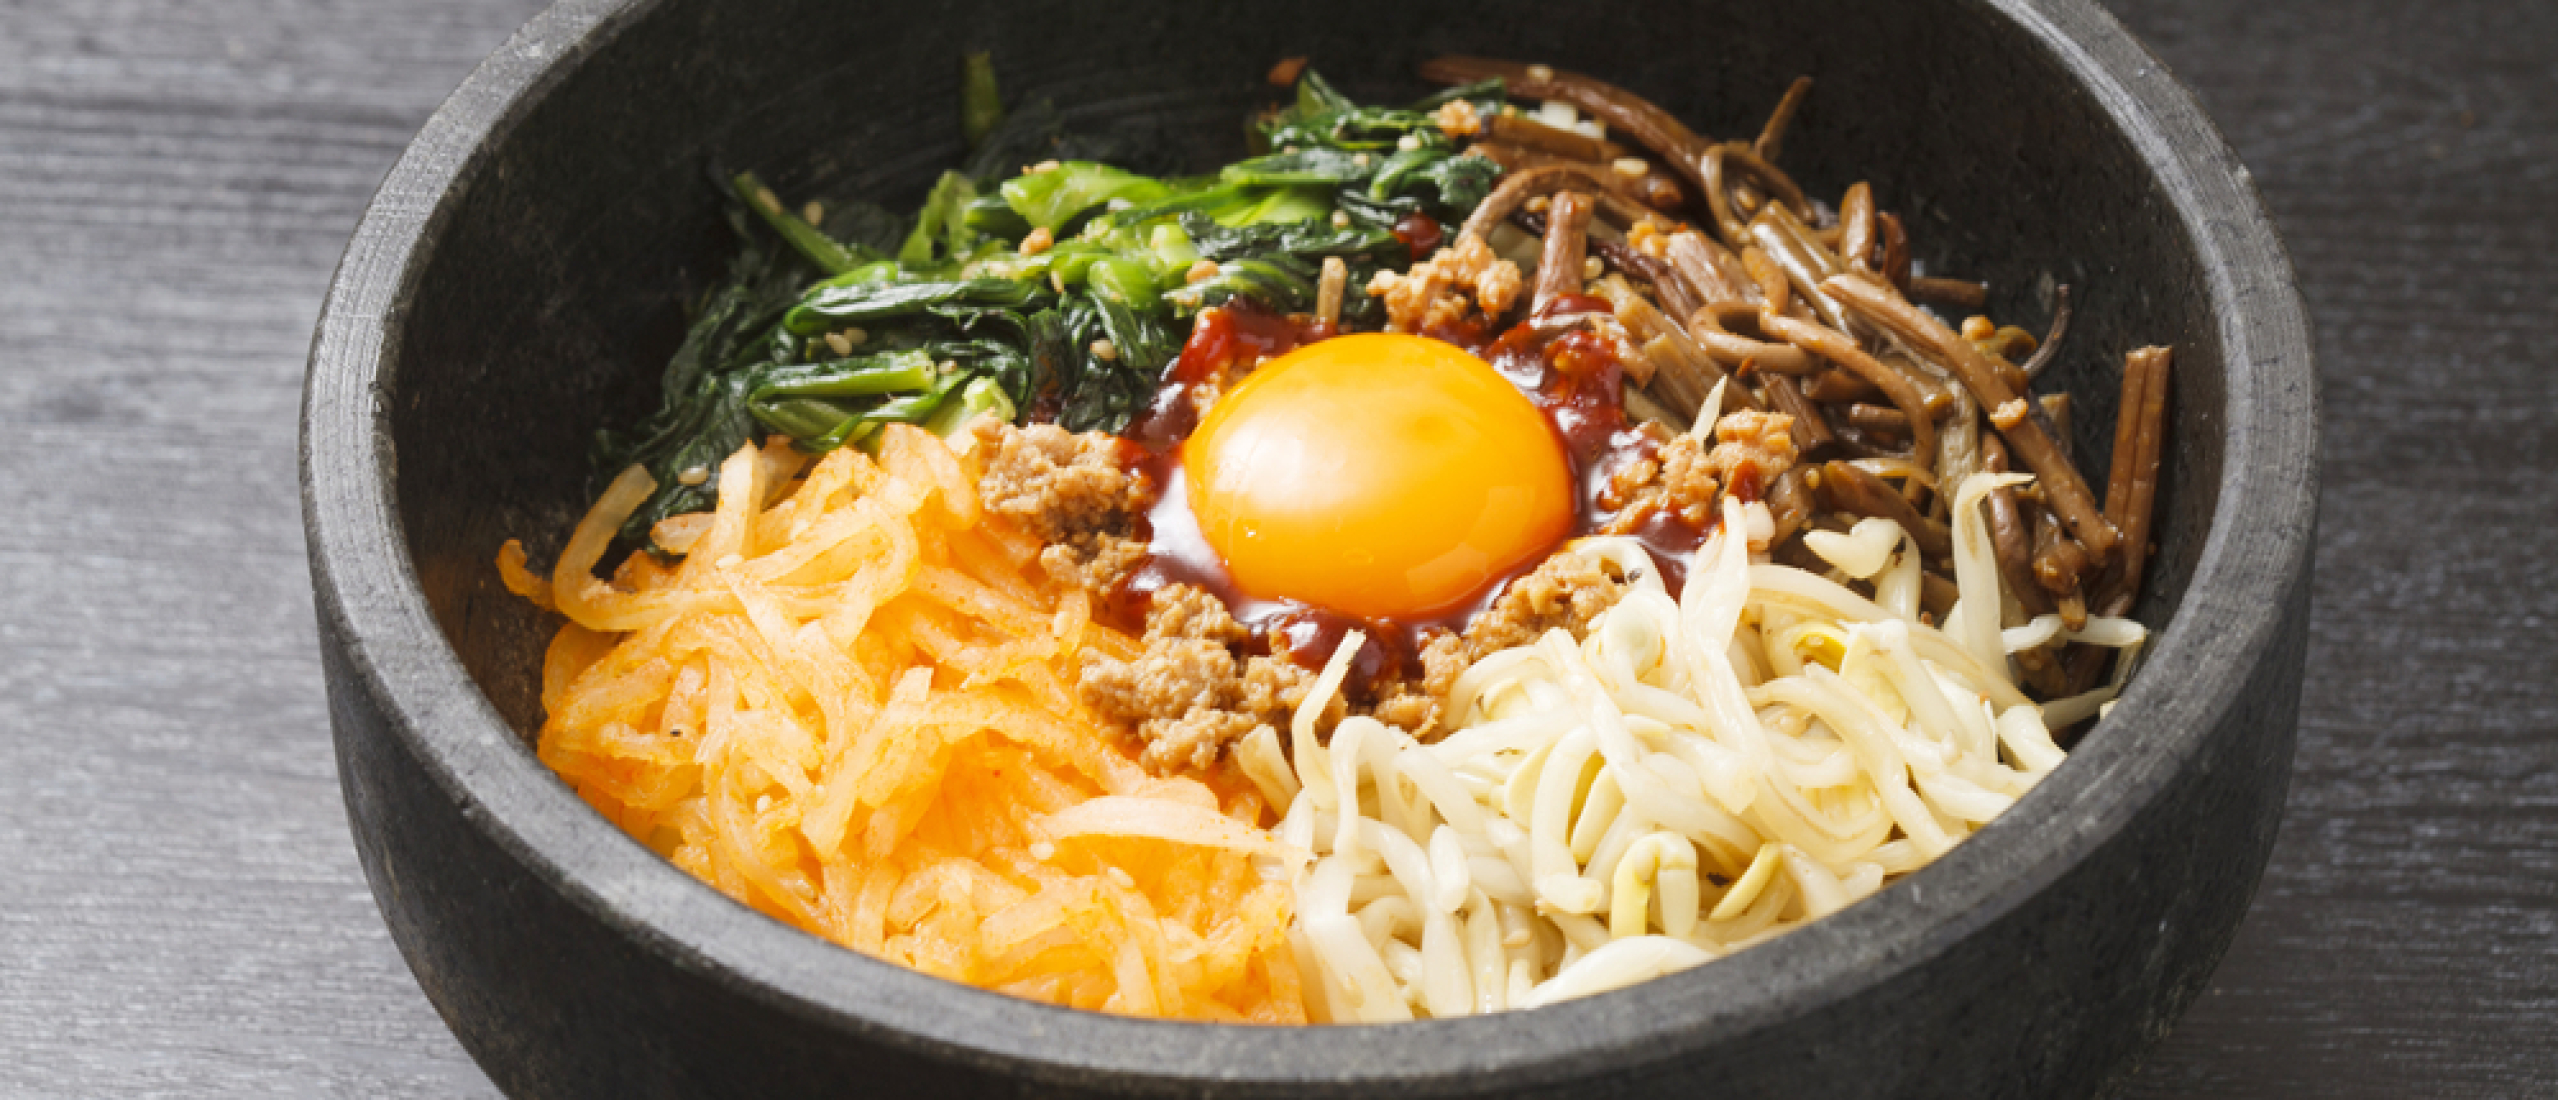 Recept voor Koreaanse bibimbap